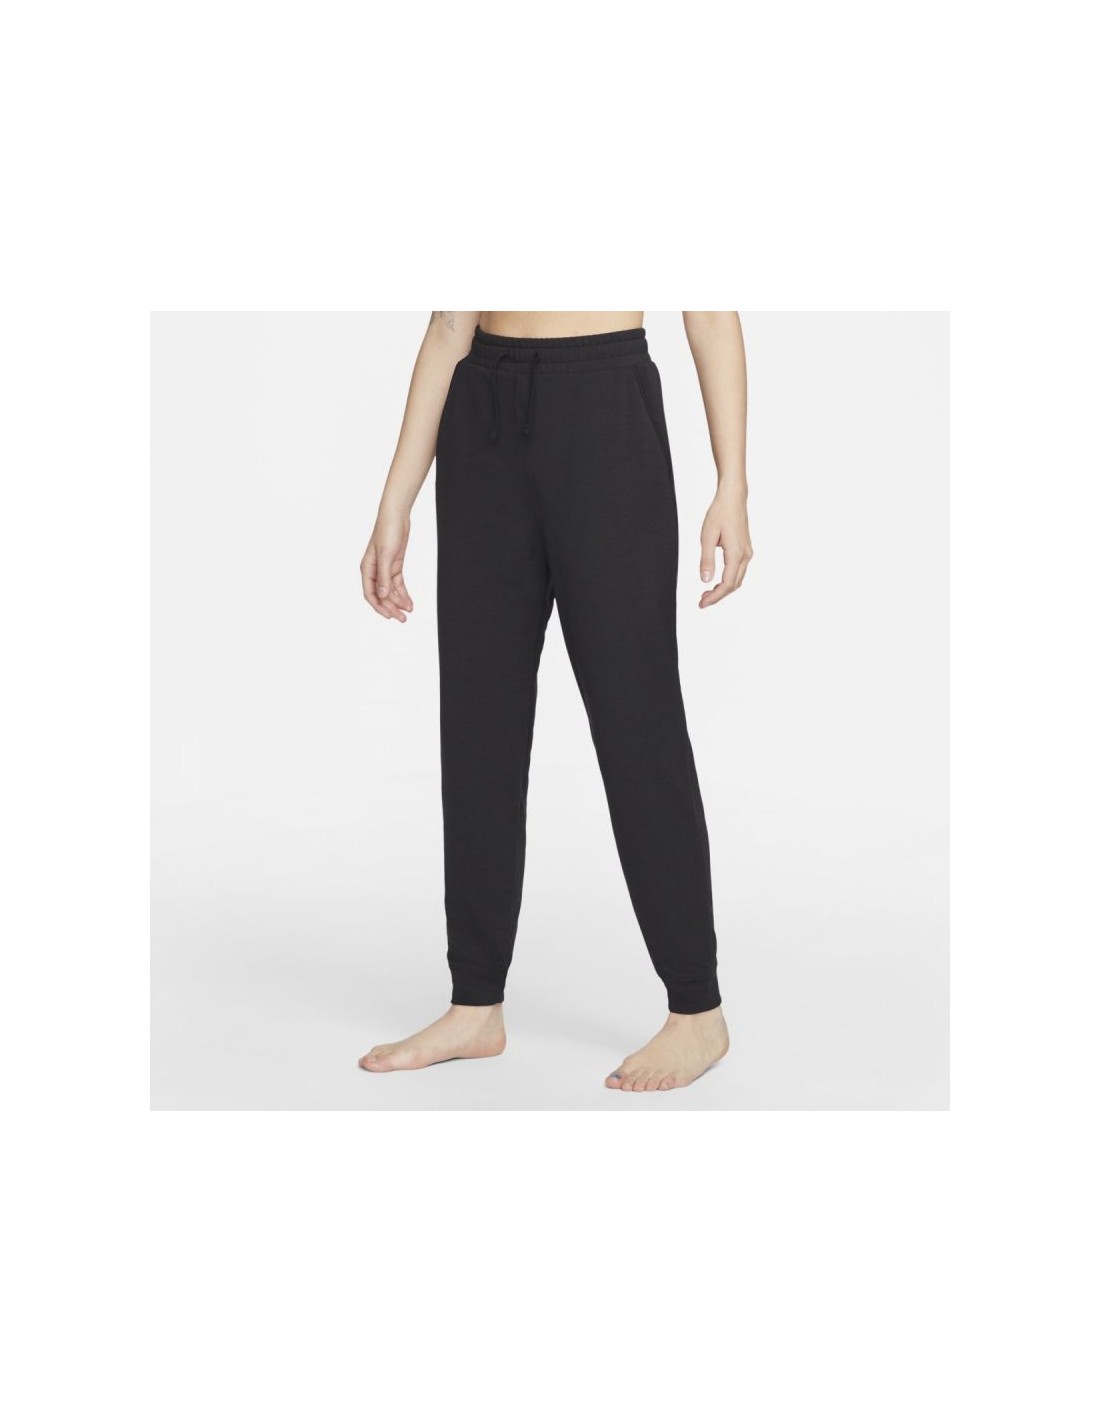 Nike Yoga Dri-Fit Black Jogget Pants Mens Size XL (DM7037-010)